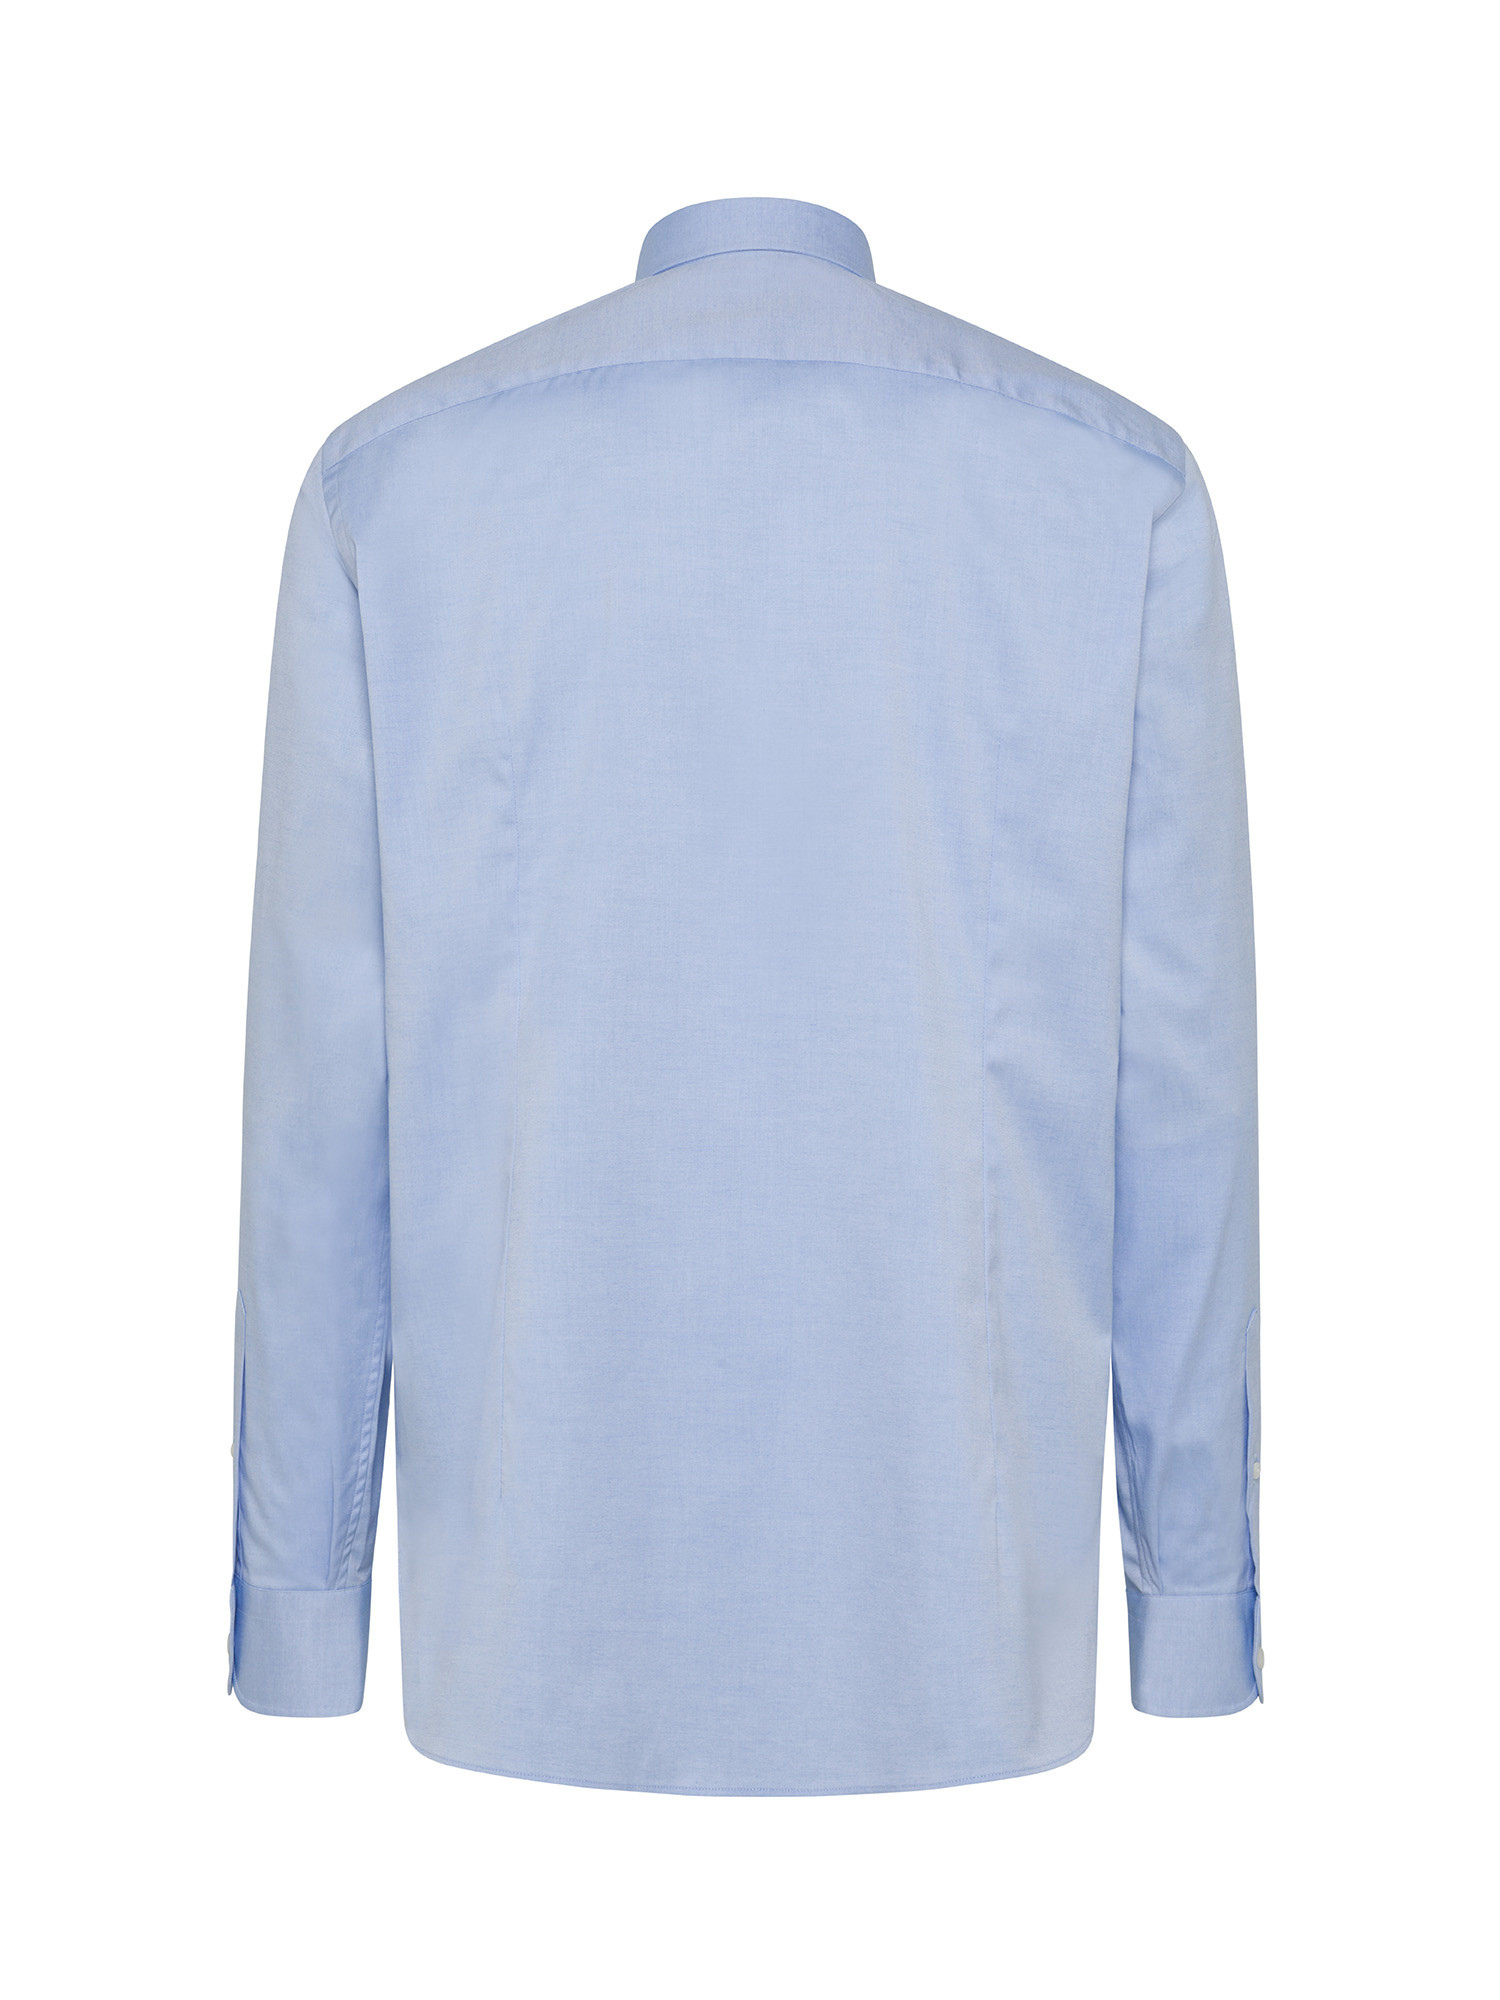 Luca D'Altieri - Camicia slim fit in cotone elasticizzato, Azzurro, large image number 1